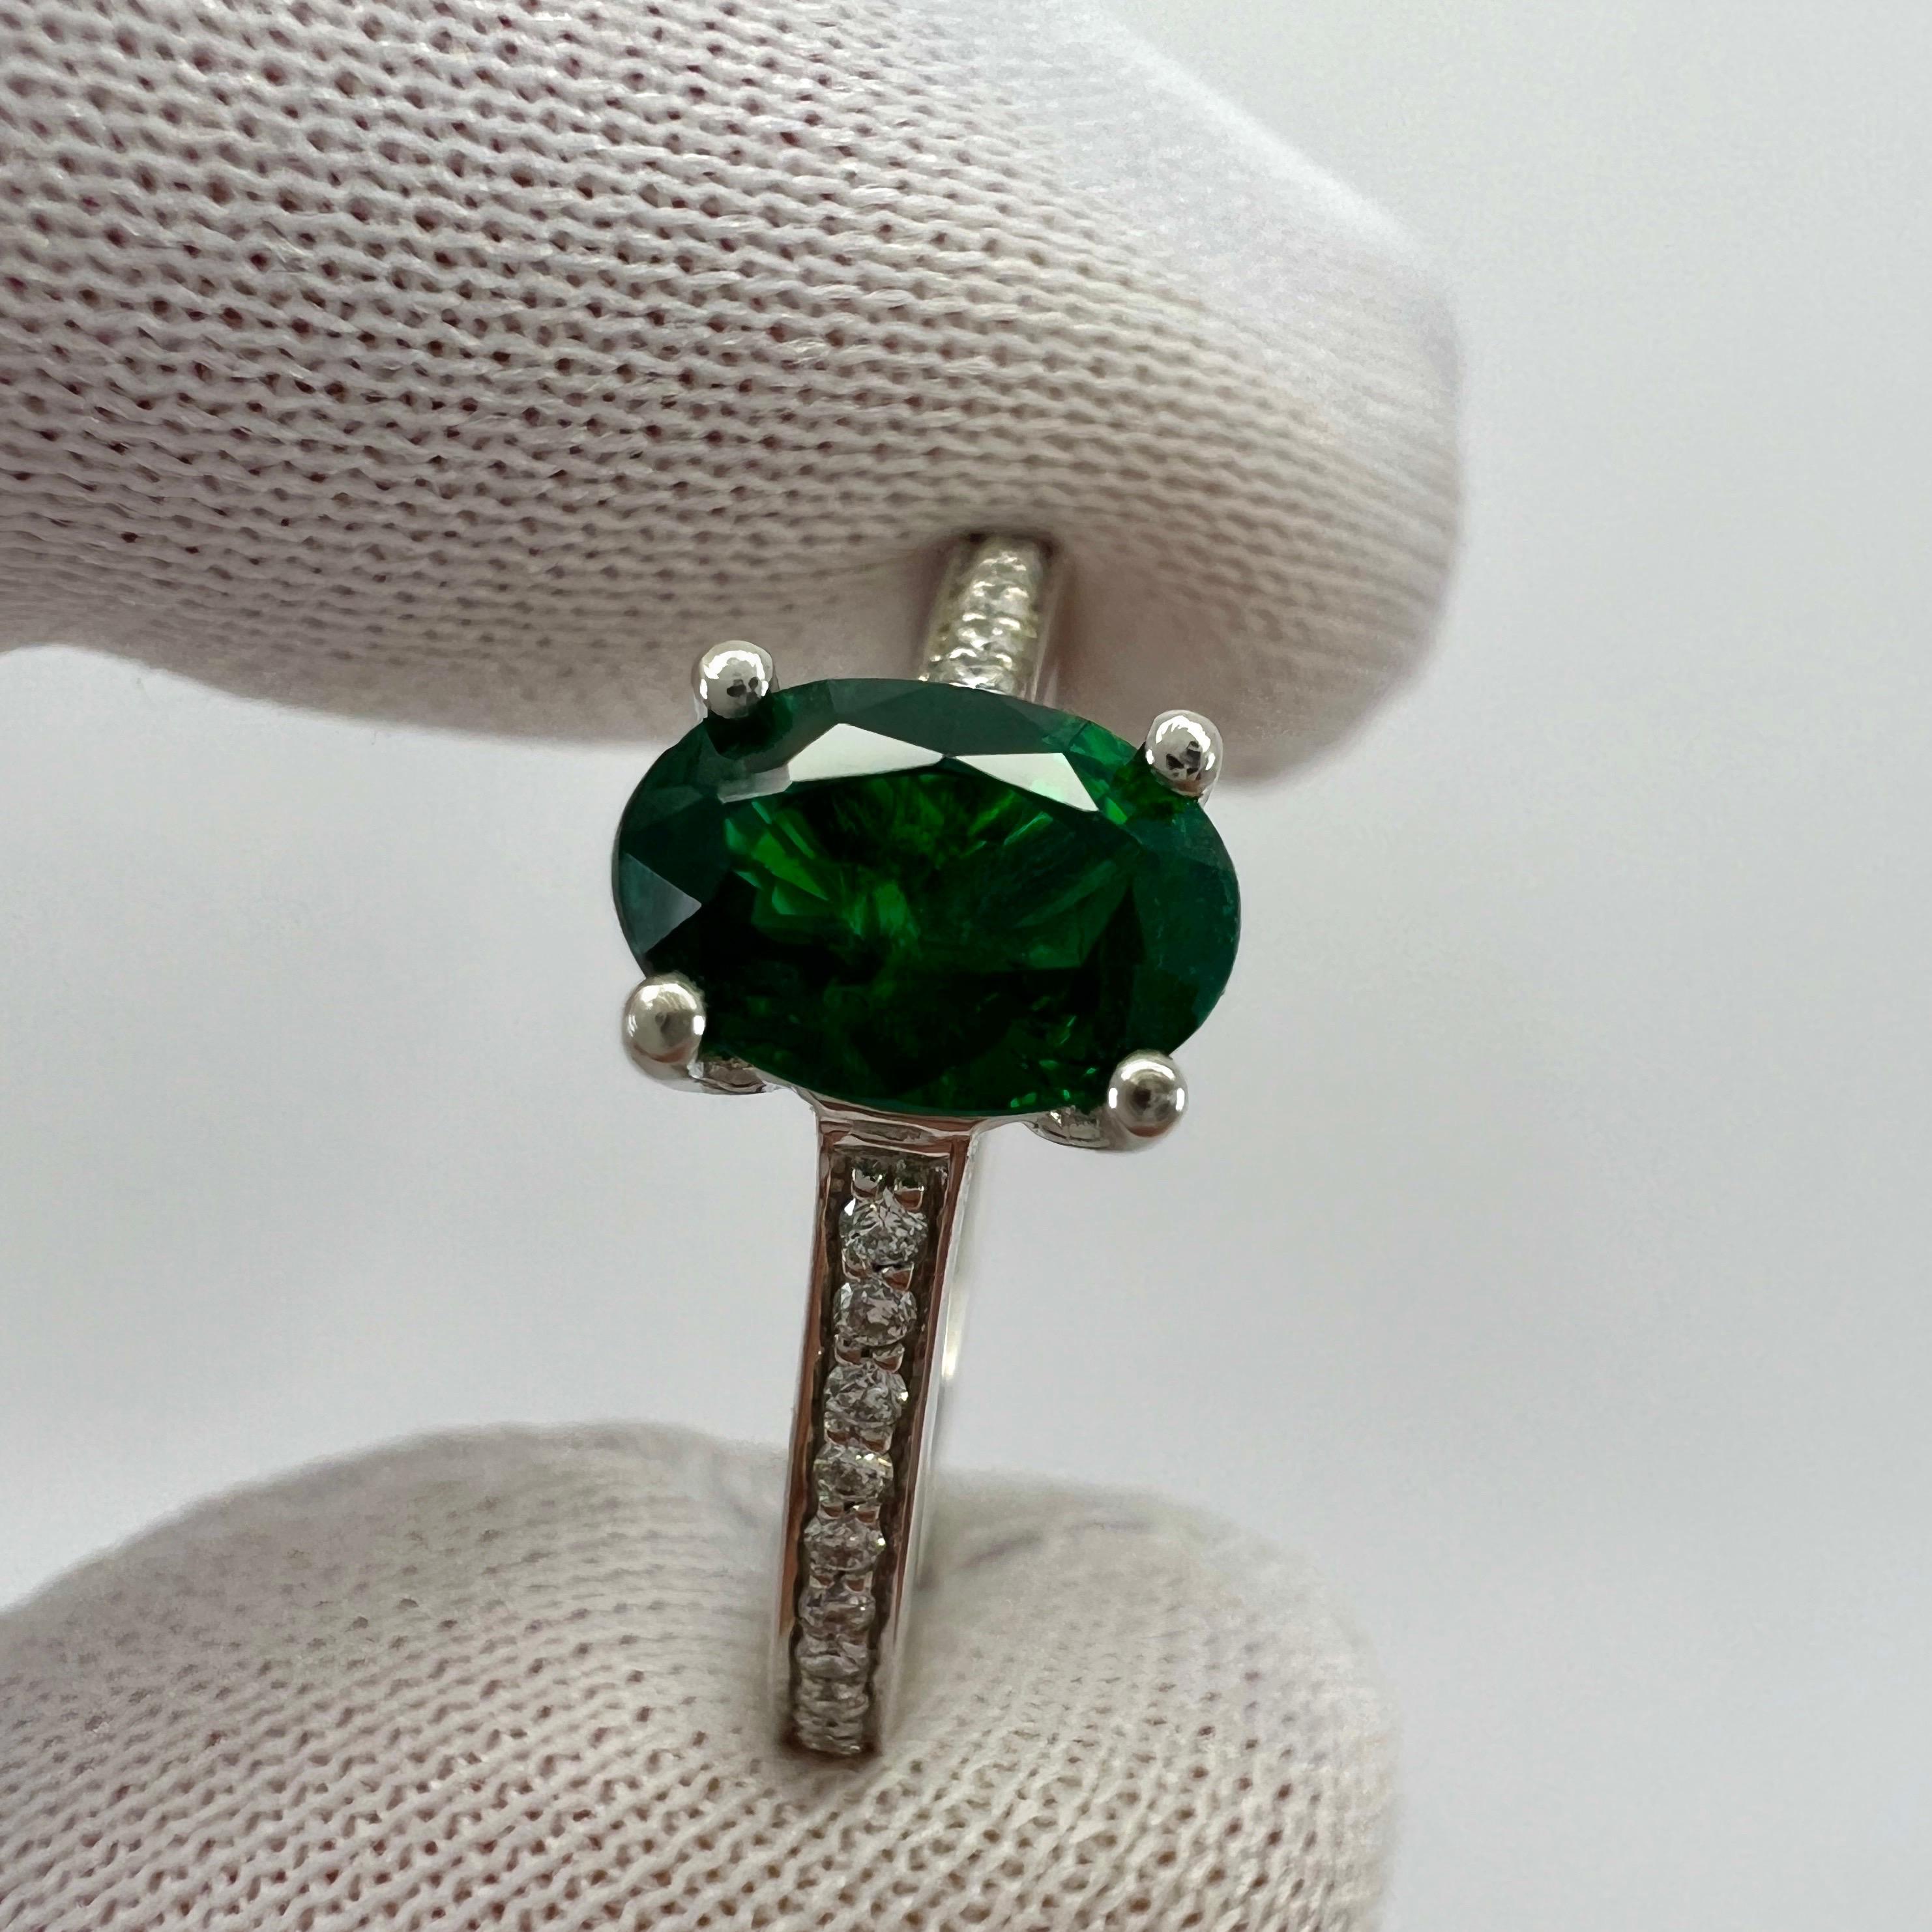 Bague solitaire en platine avec émeraude naturelle de couleur vert foncé et diamant. 1,00 Poids total en carats.

Magnifique émeraude de 0,88 carat d'une belle couleur vert foncé et d'une excellente taille ovale. Mesurant un peu plus de